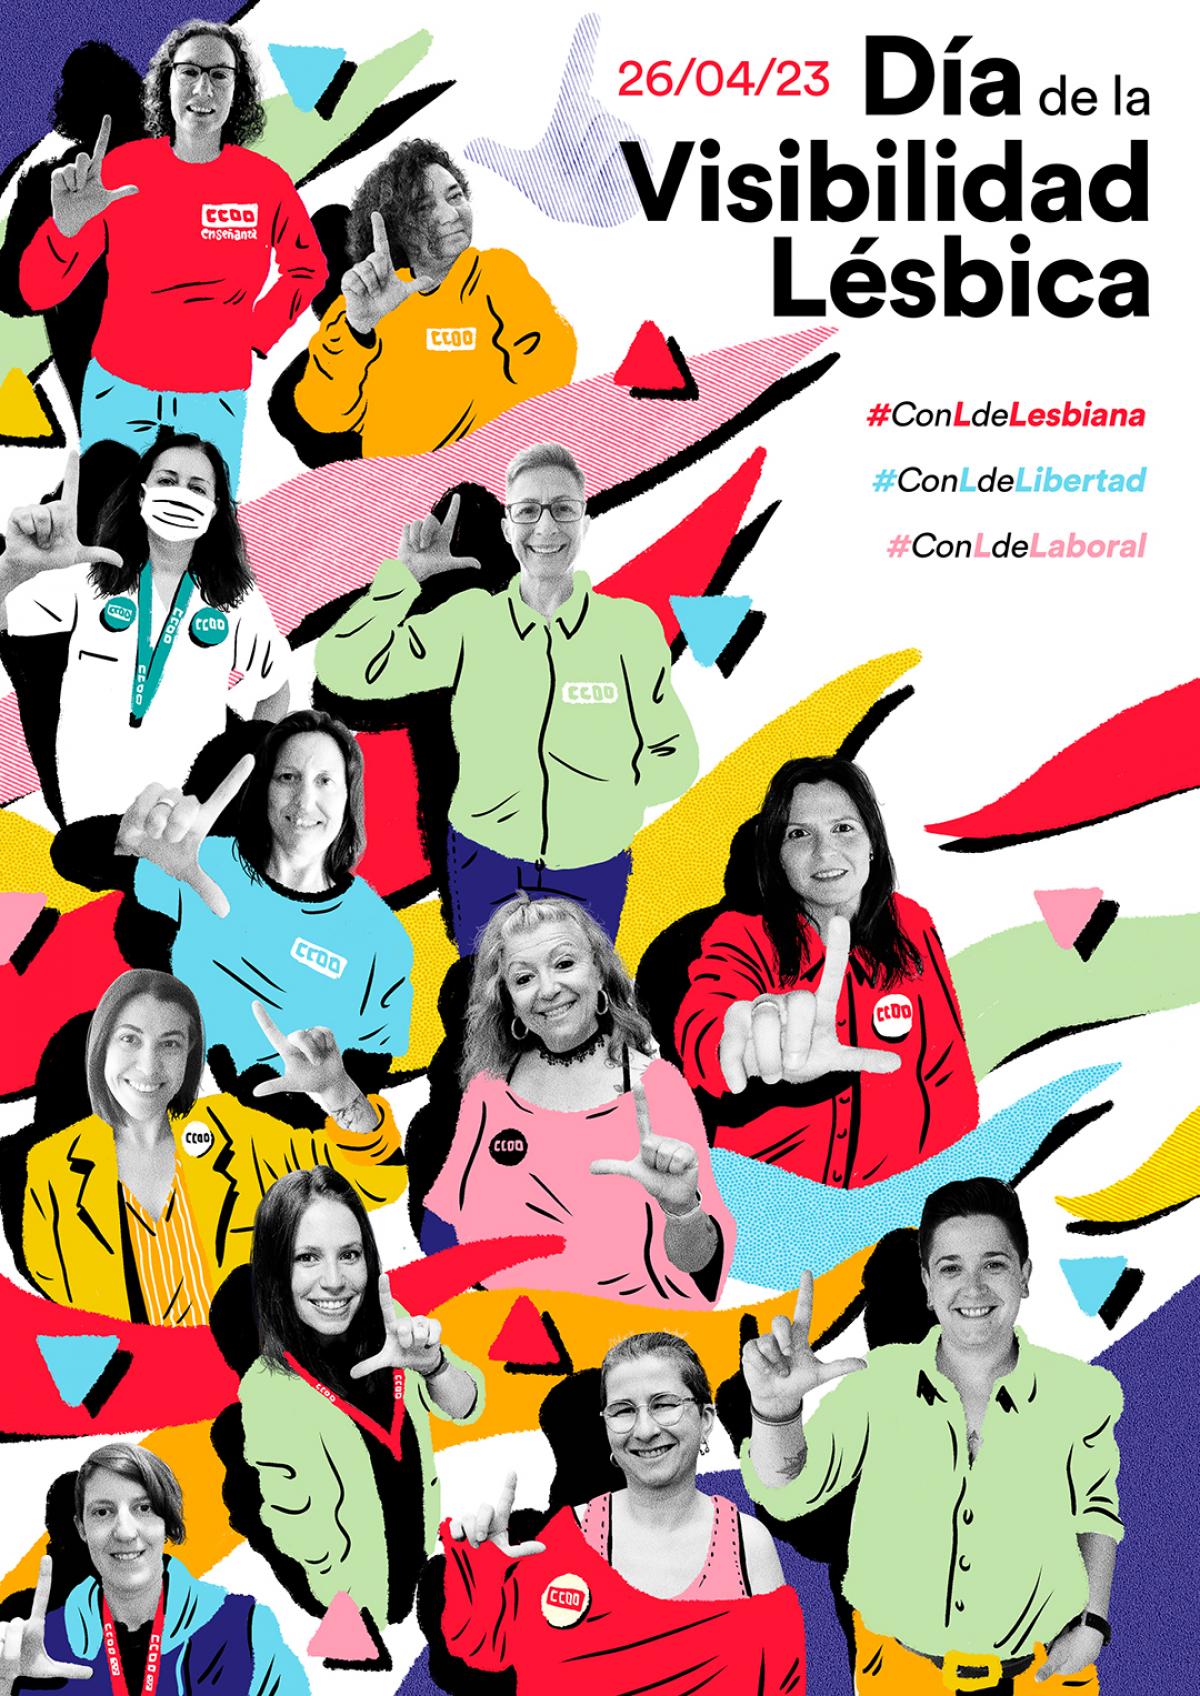 26 de Abril de 2023: Día de la Visibilildad Lésbica, #ConLdeLesbiana #ConLdeLibertad #ConLdeLaboral